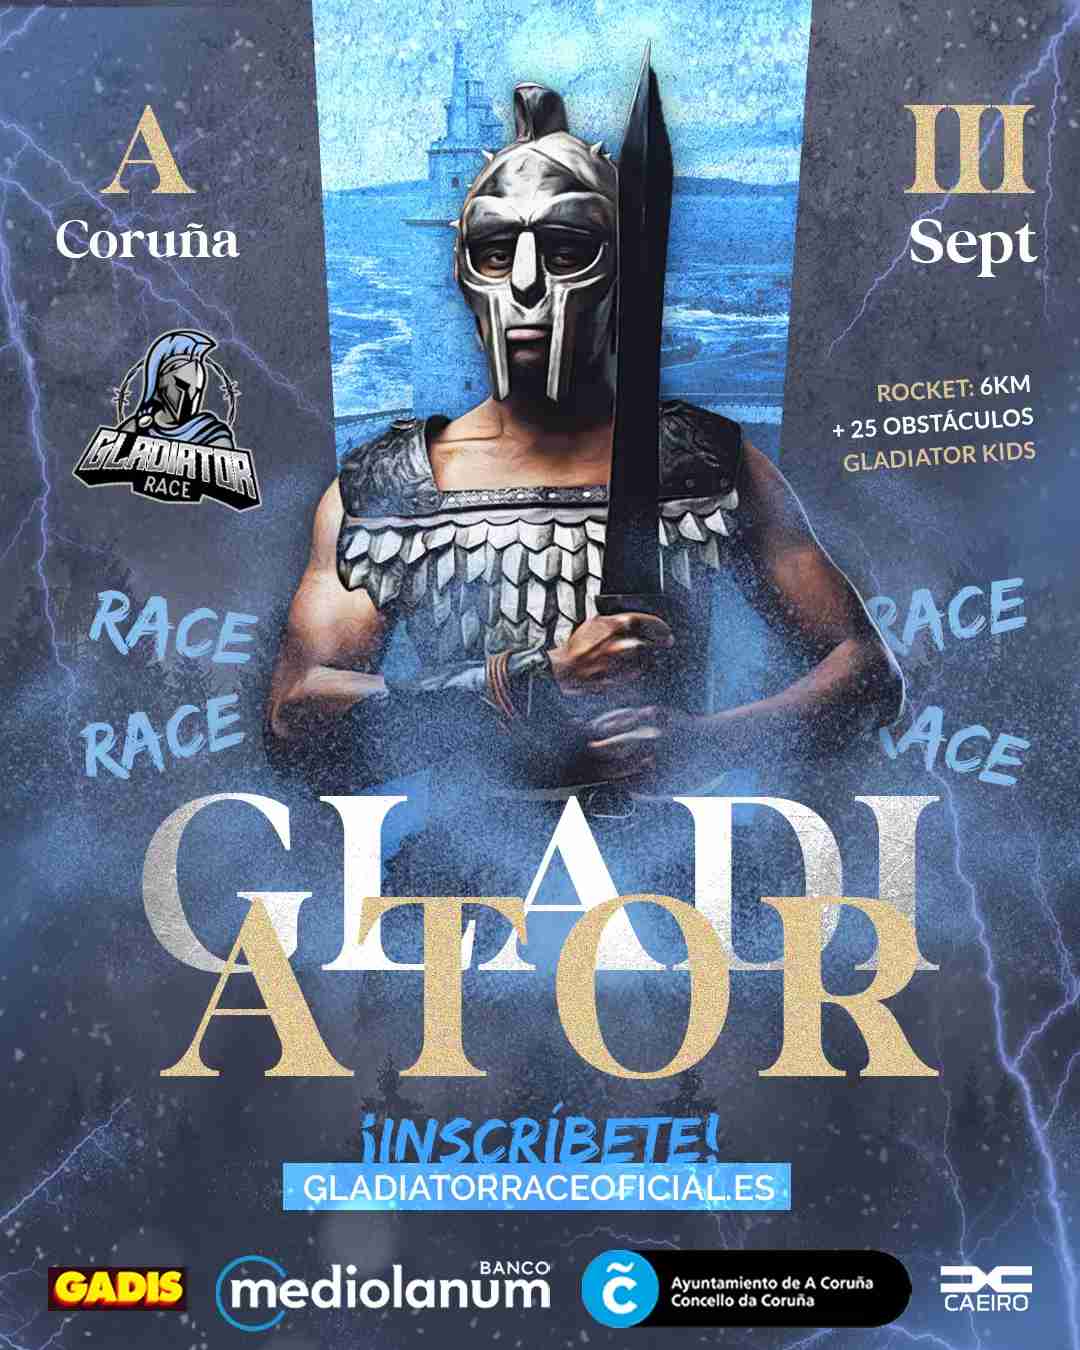 Gladiator Race A Coruña